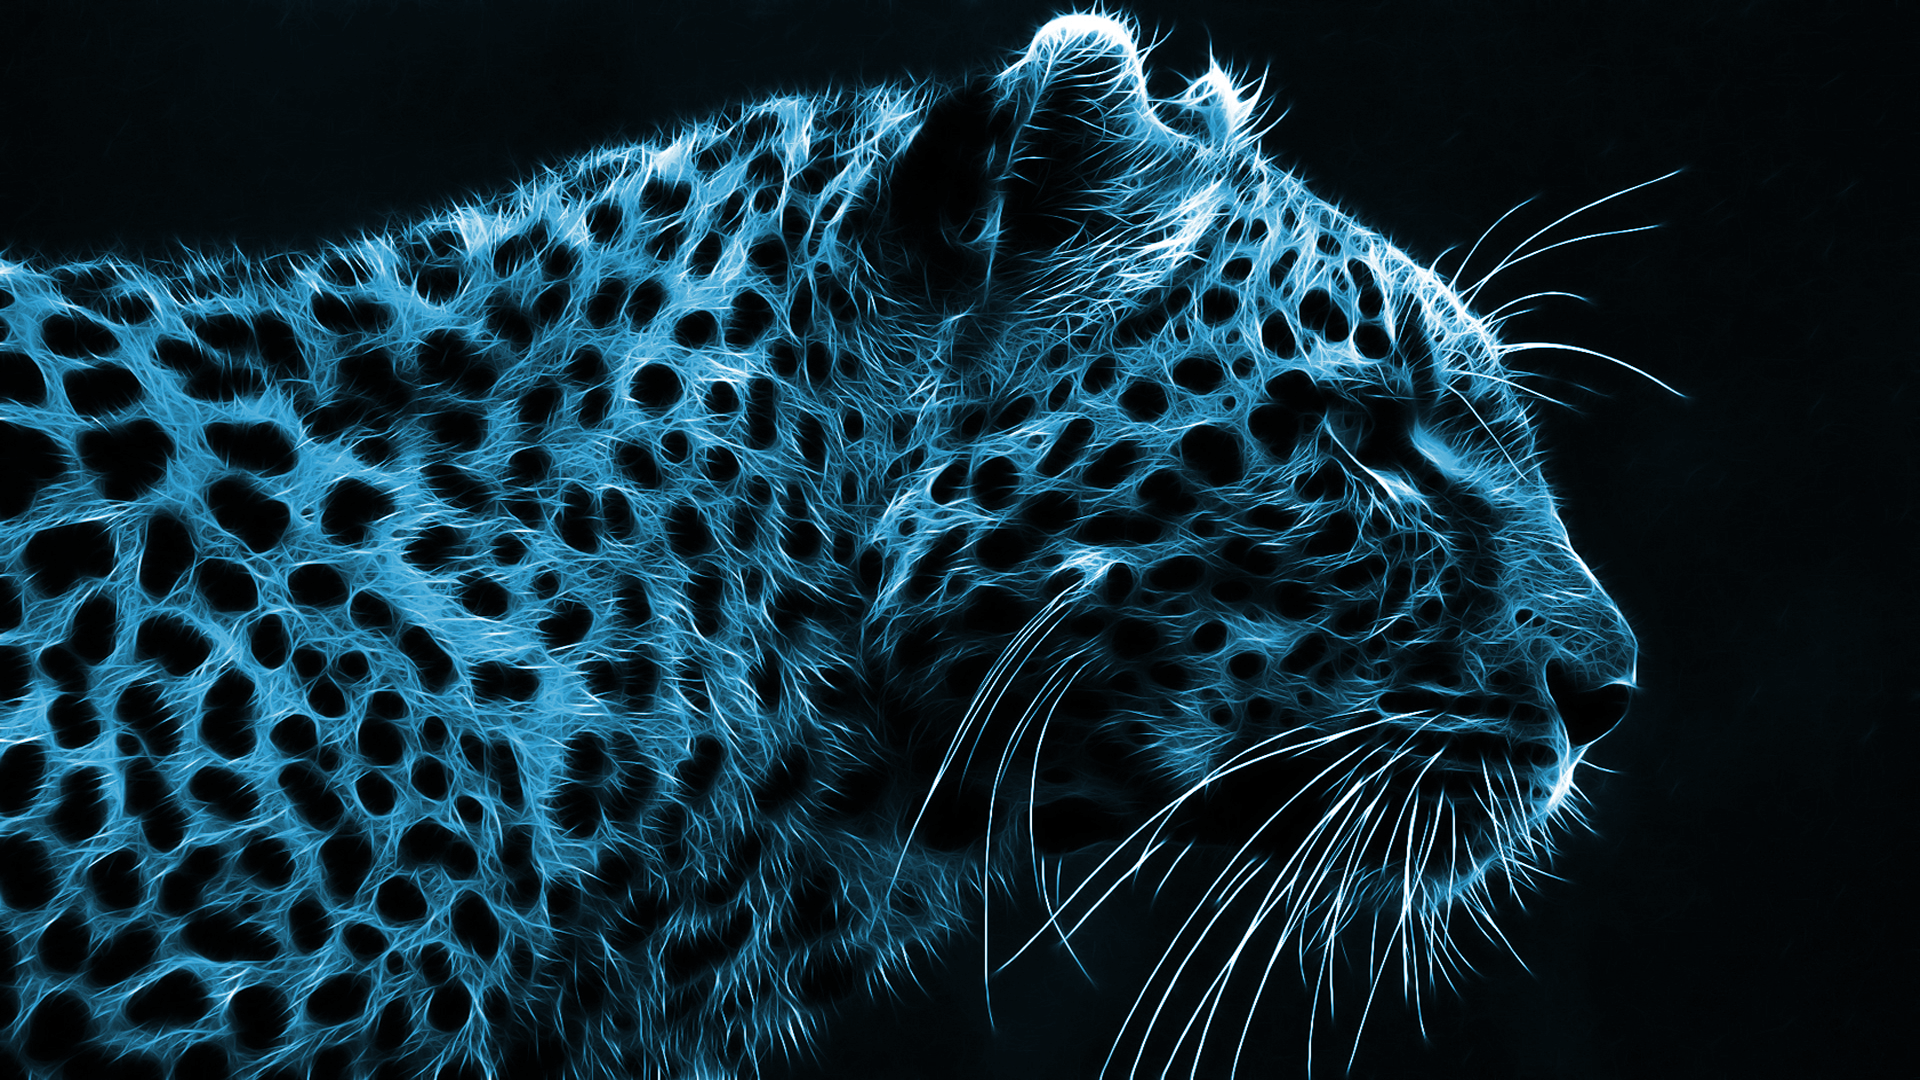 Cheetah Wallpaper, Cheetah Wallpaper Free Download